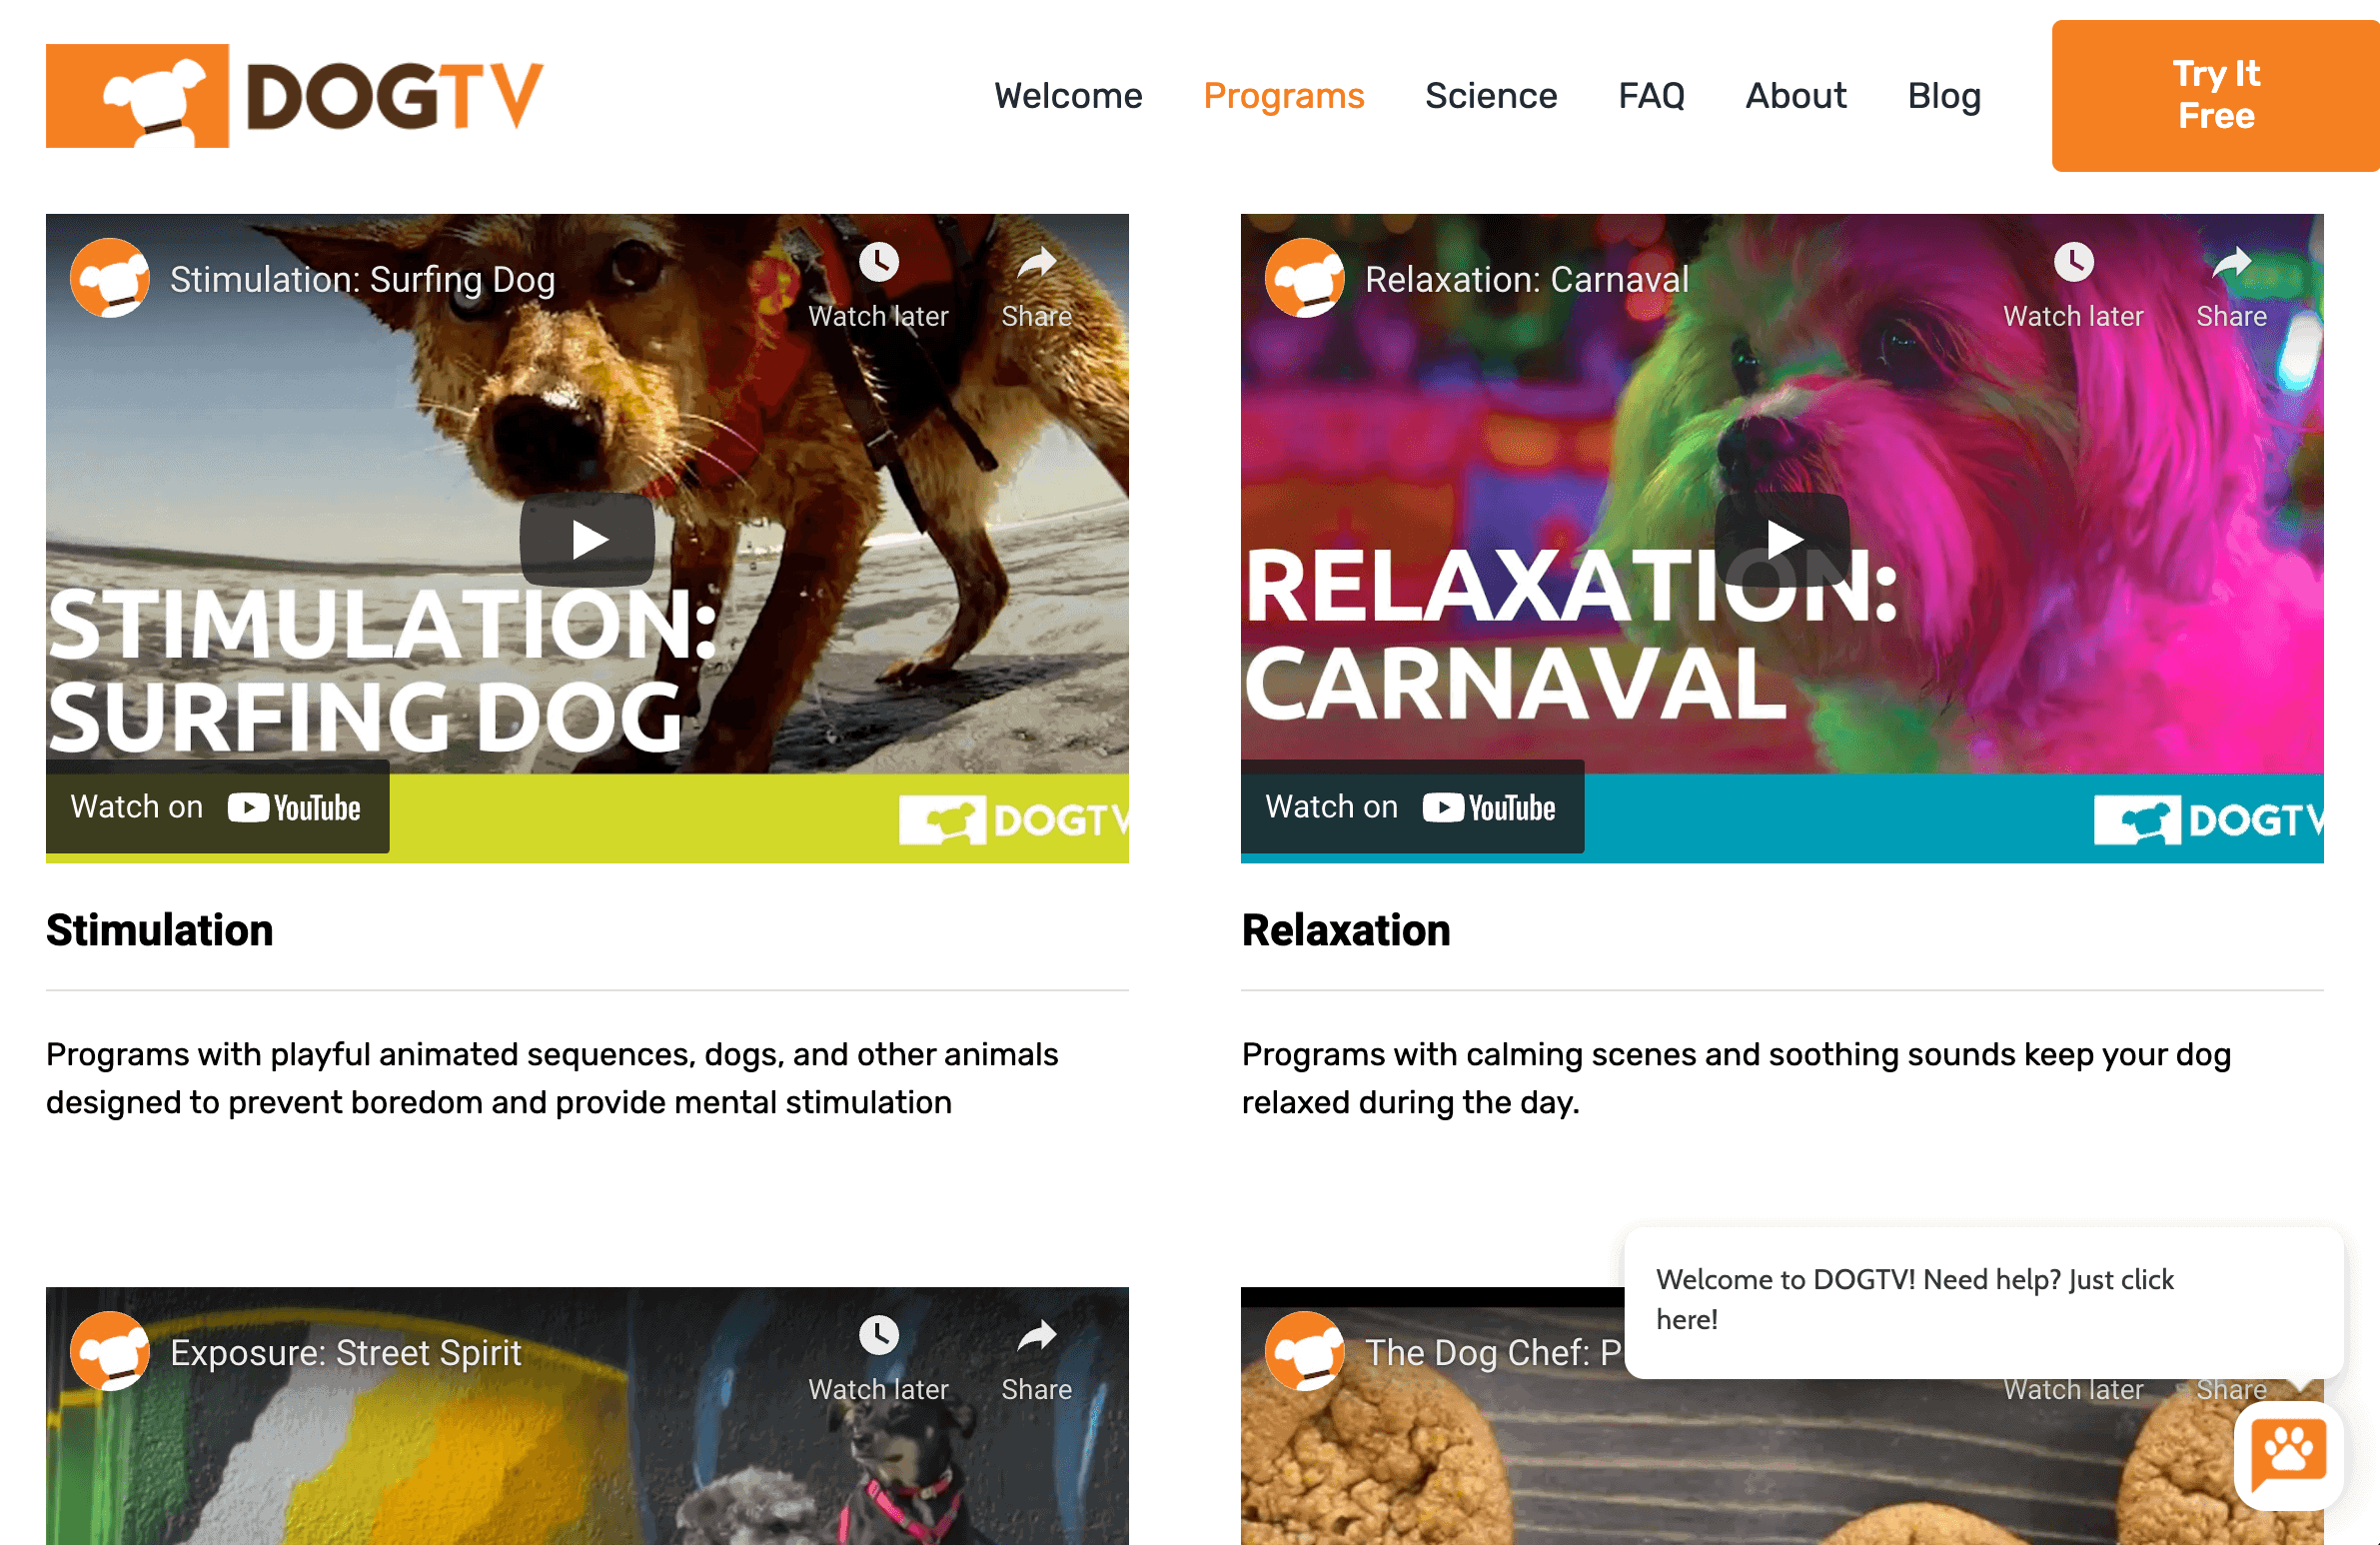 DogTV Programs